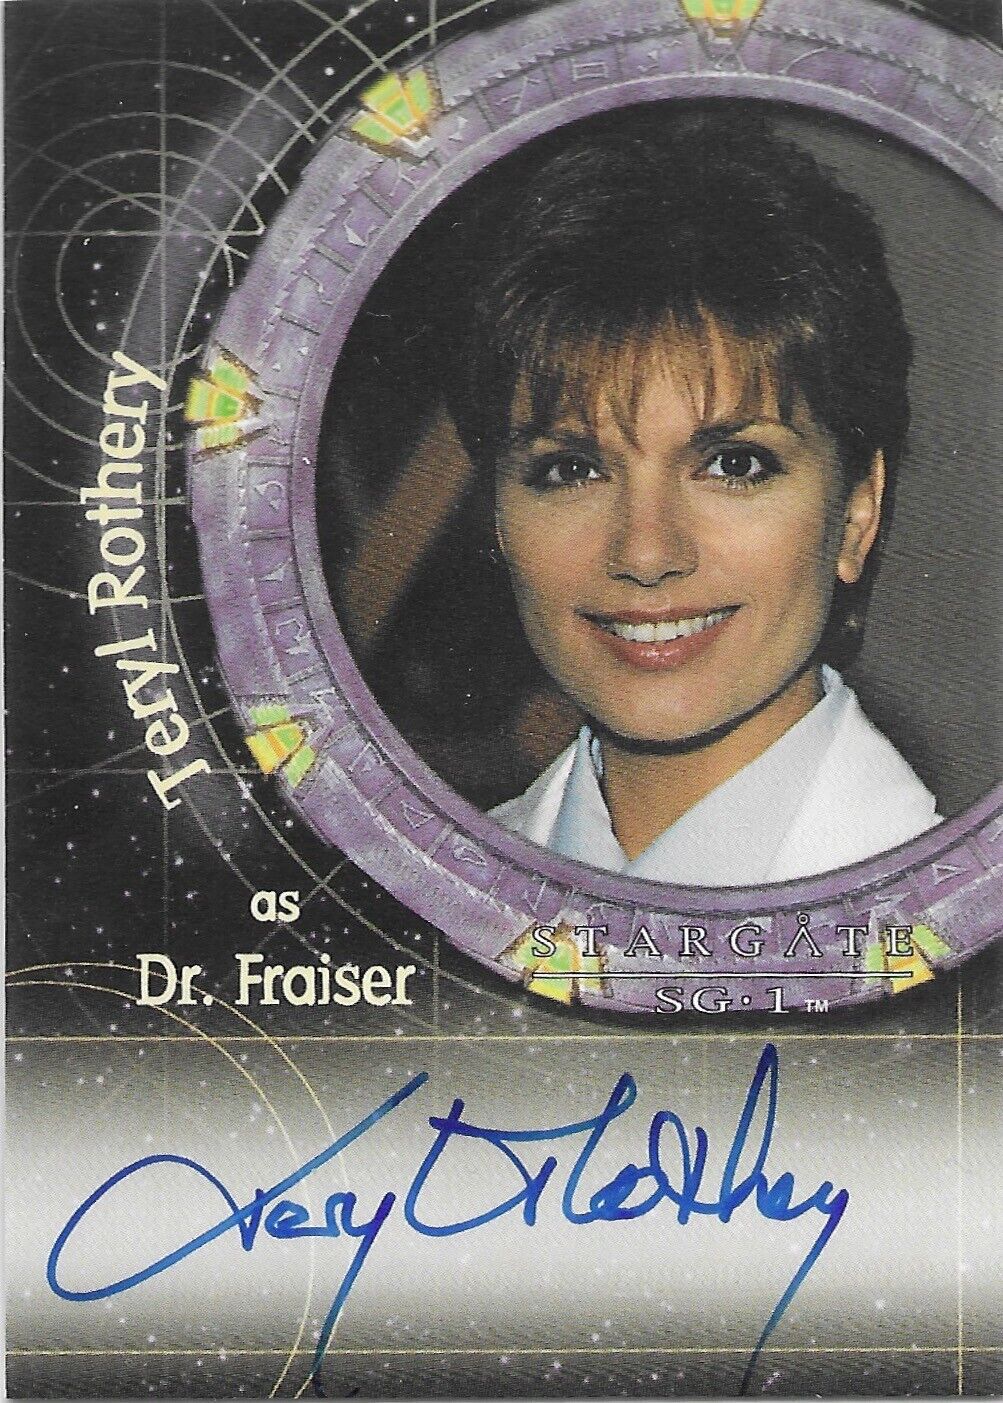 Stargate SG-1 Season 7 - A45 Teryl Rothery Autograph as Dr. Fraiser Auto